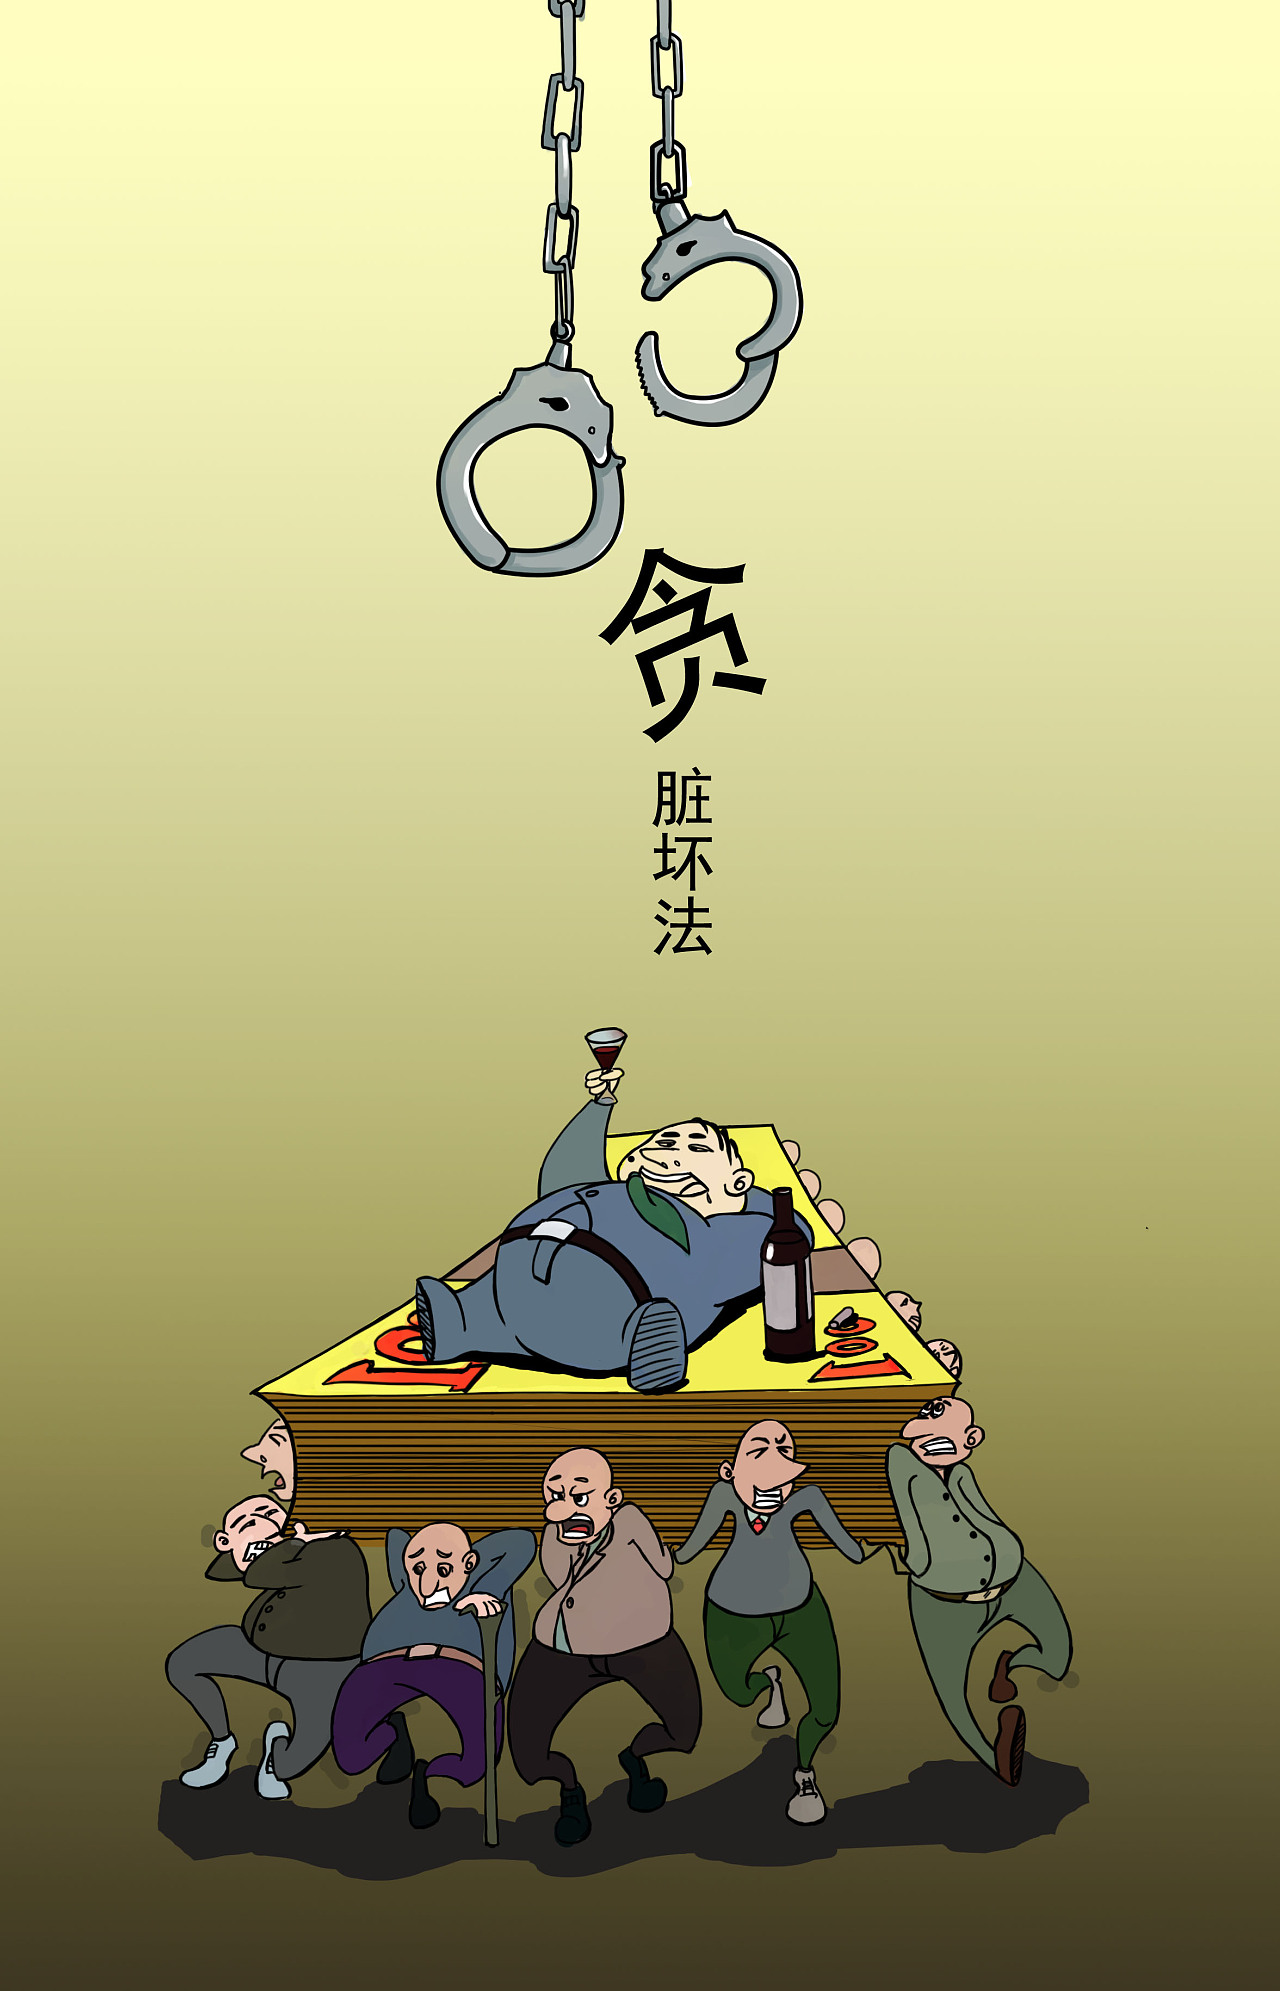 漫画||严肃村（社区）组织换届纪律 牢记“十严禁” “十不准”